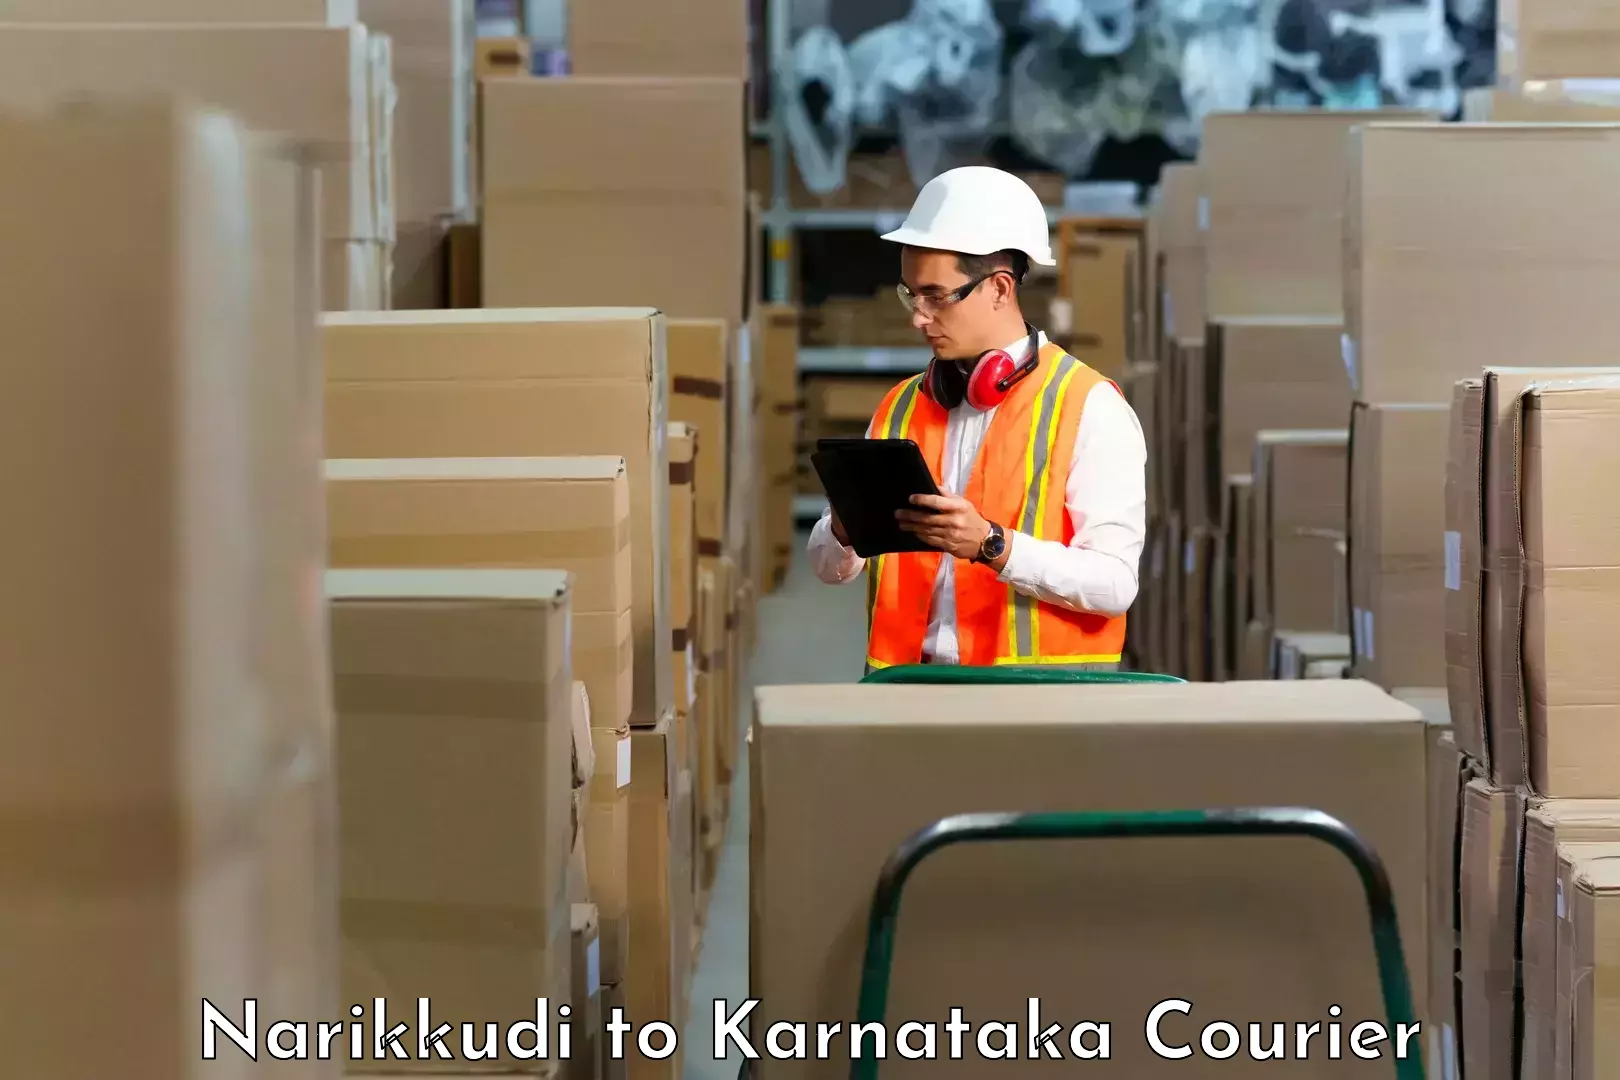 Global parcel delivery Narikkudi to Devadurga